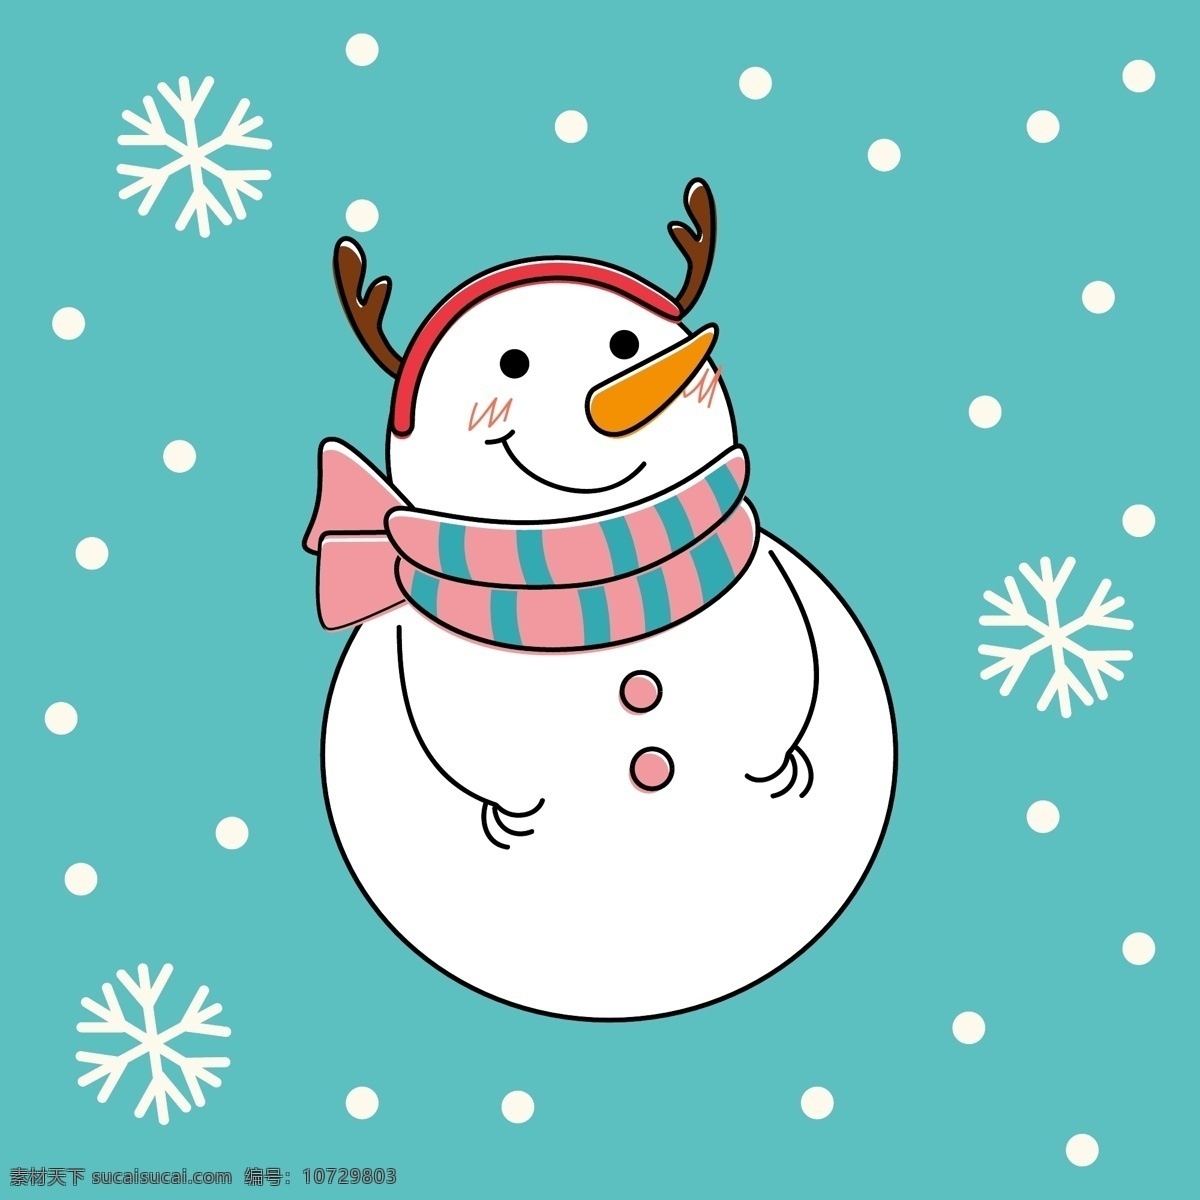 卡通雪人 雪人 矢量雪人 雪人素材 雪人卡片 手绘雪人 圣诞节 堆雪人 白雪 白雪人 雪球 雪球人 雪娃娃 卡通 冬季 快乐 矢量图